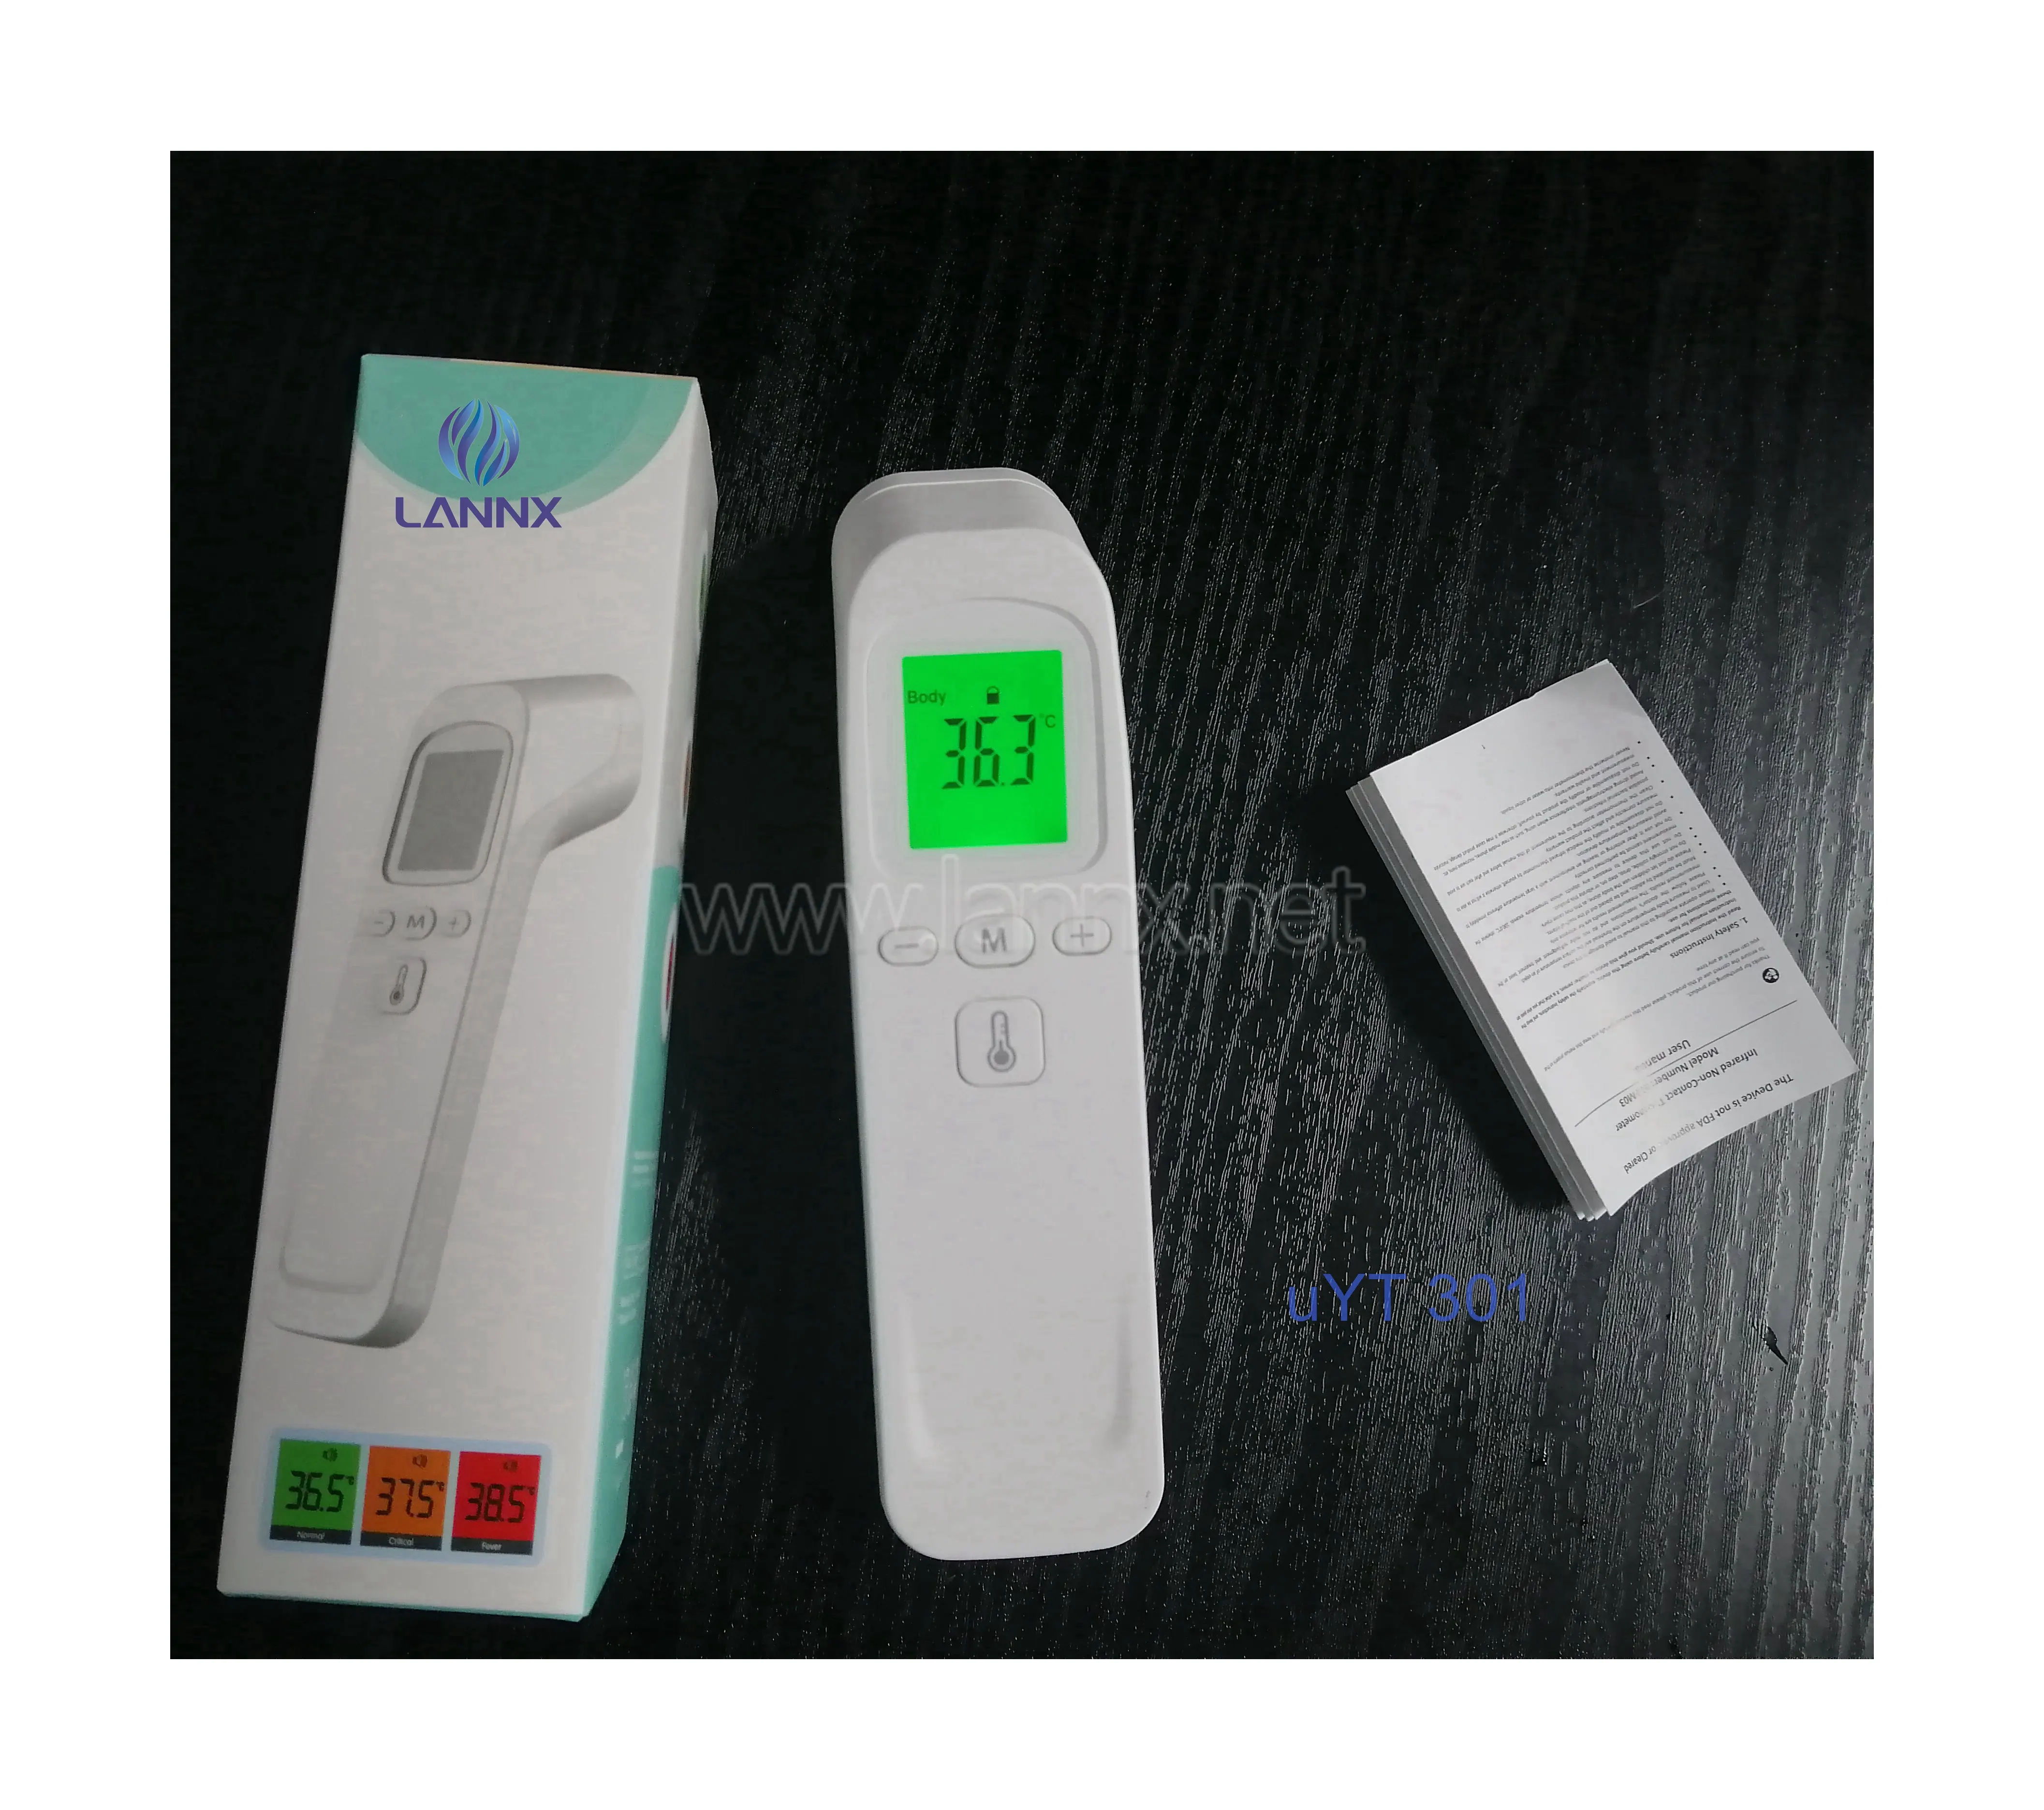 LANNX uYT 301 Hoch empfindliches, schnell ablesbares medizinisches klinisches Mini-IR-Thermometer für Kinder berührungs los Test-Digital thermometer